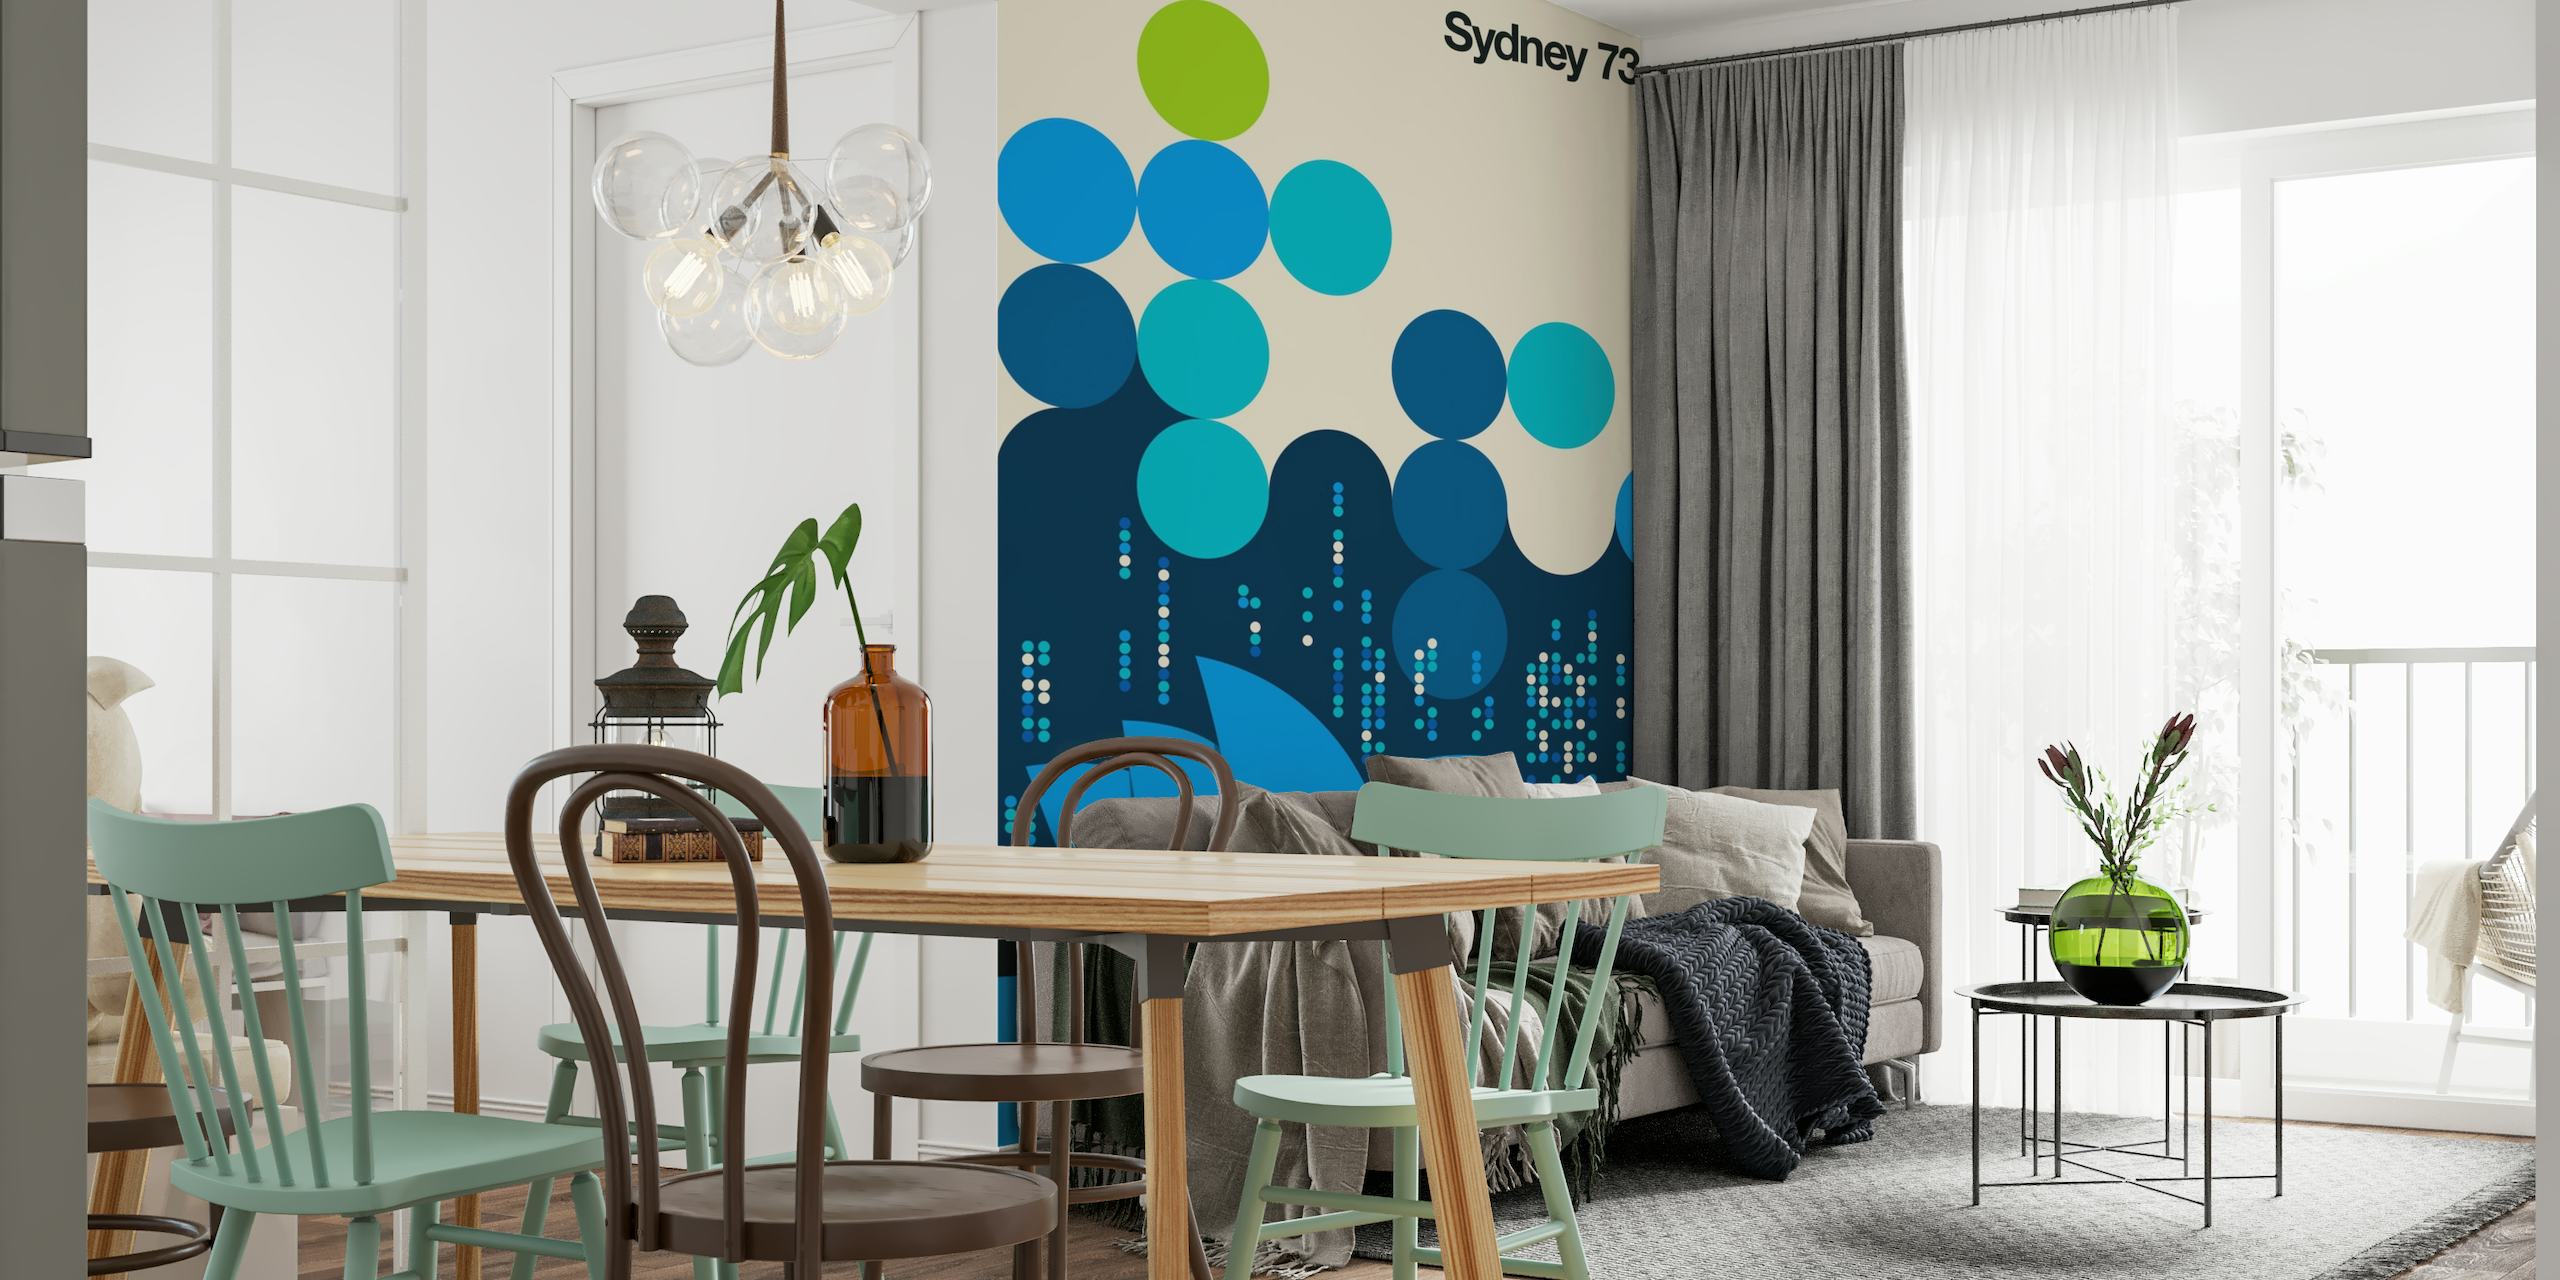 Sydney 73 wallpaper